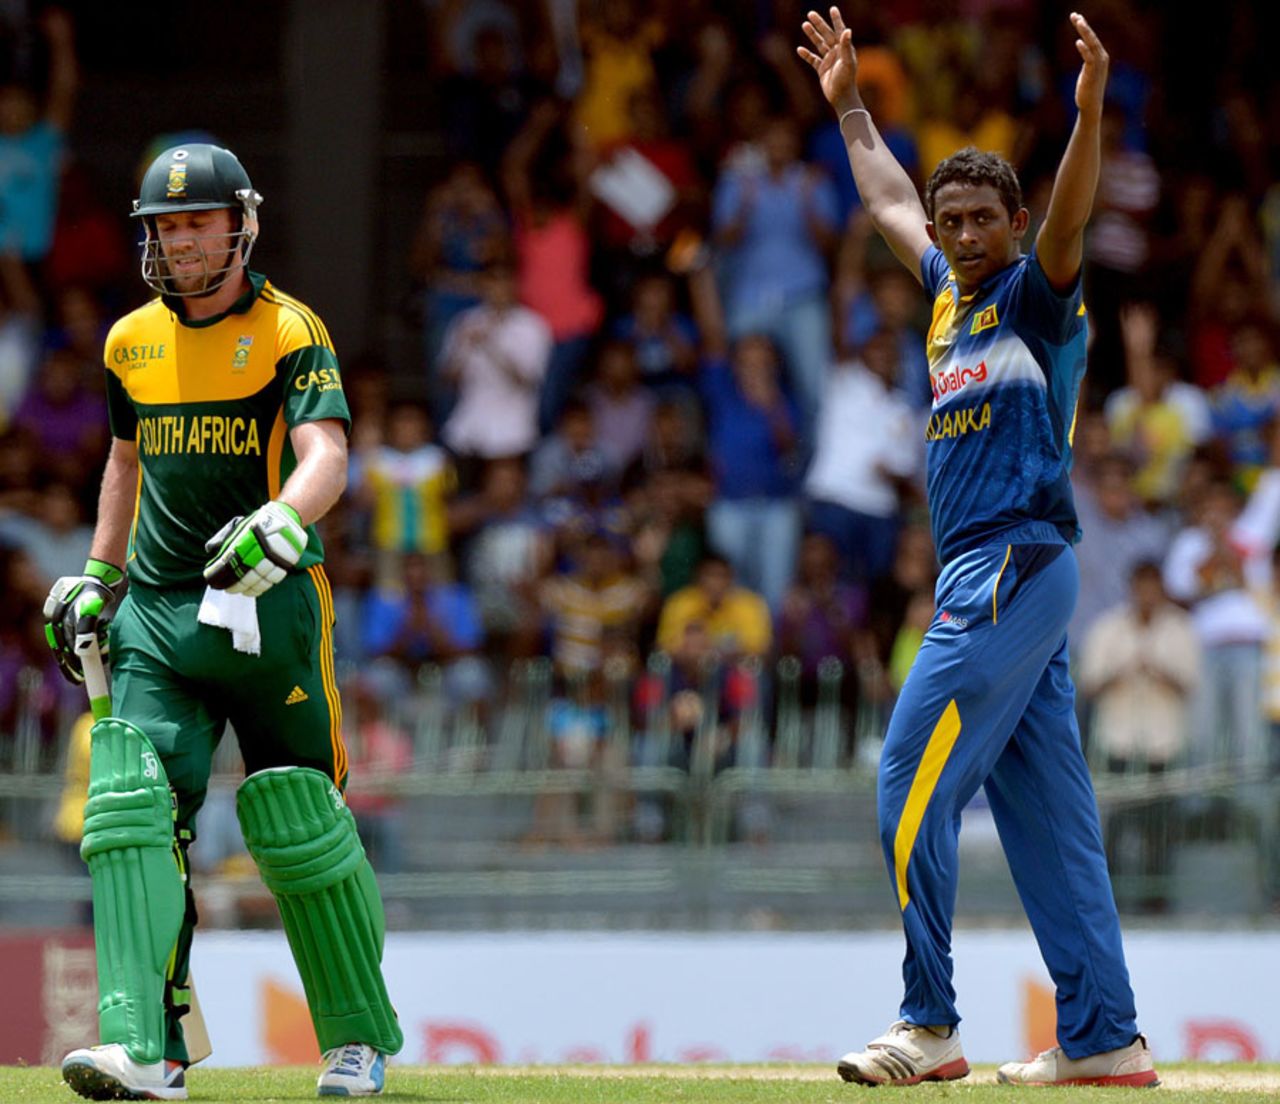 Ajantha Mendis dismissed AB de Villiers for 75, Sri Lanka v South Africa, 1st ODI, Colombo, July 6, 2014